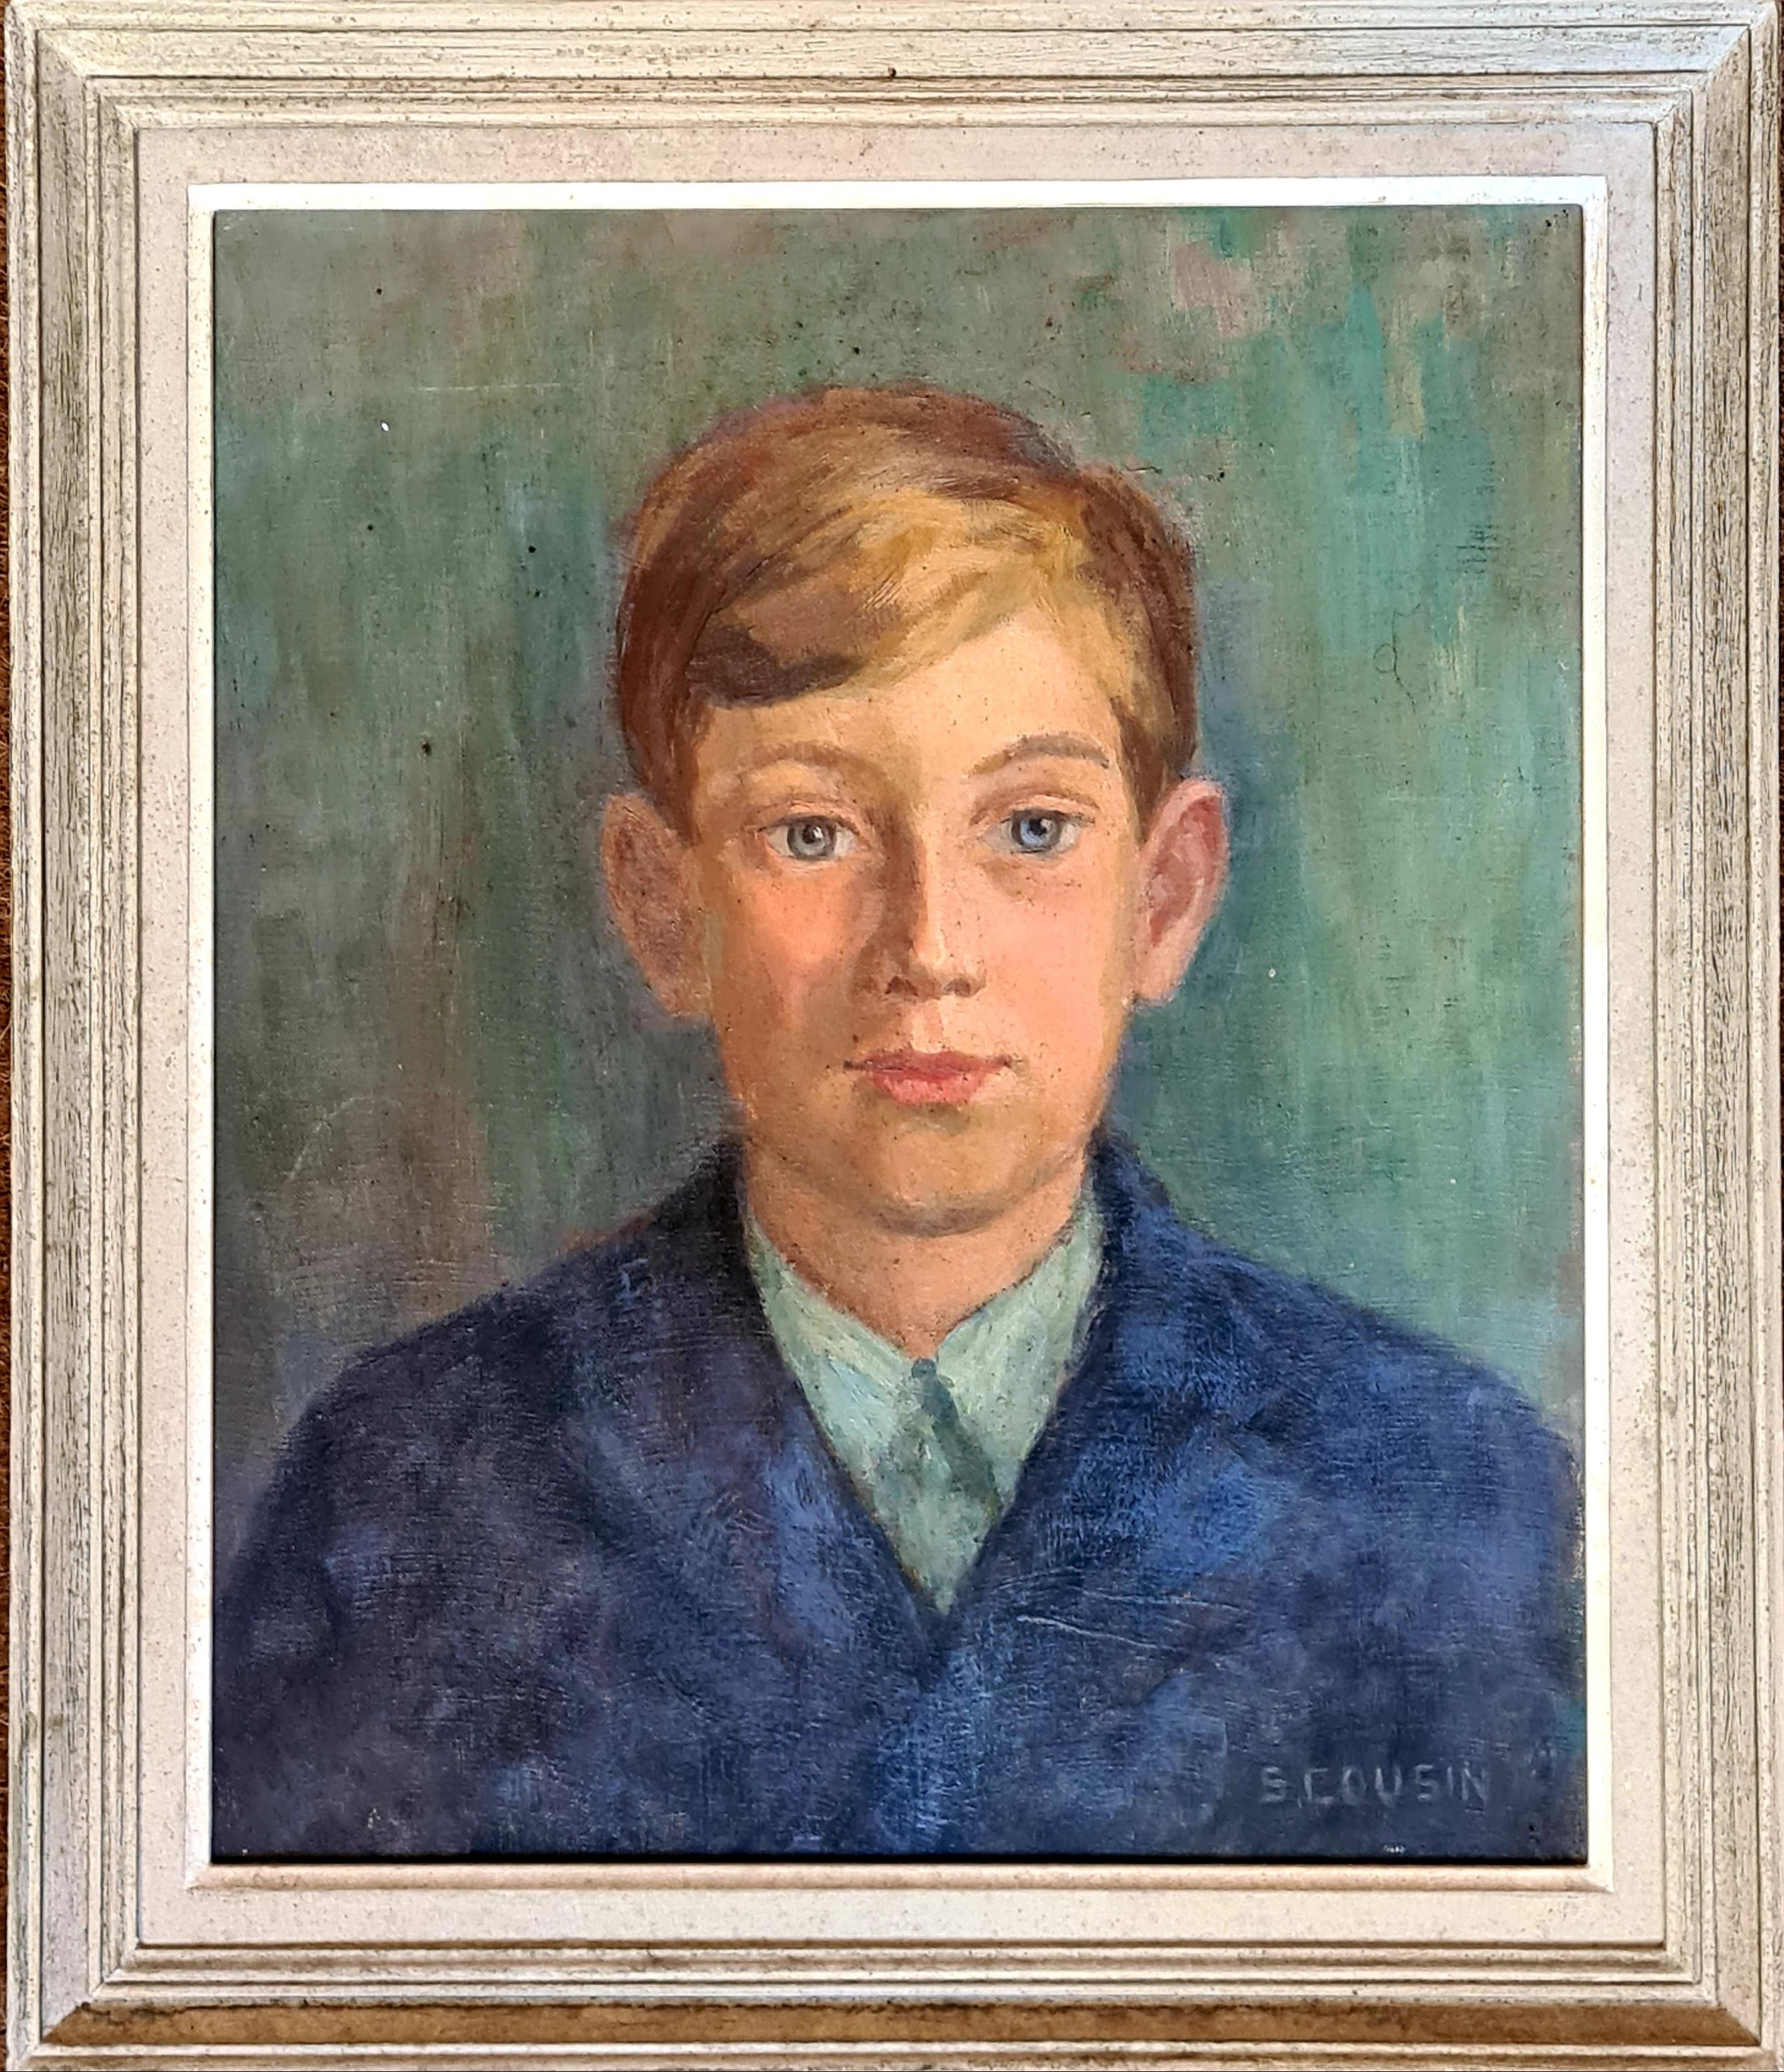 S Cousin Portrait Painting - 1930s Oil on Canvas Portrait of the Artist's Son